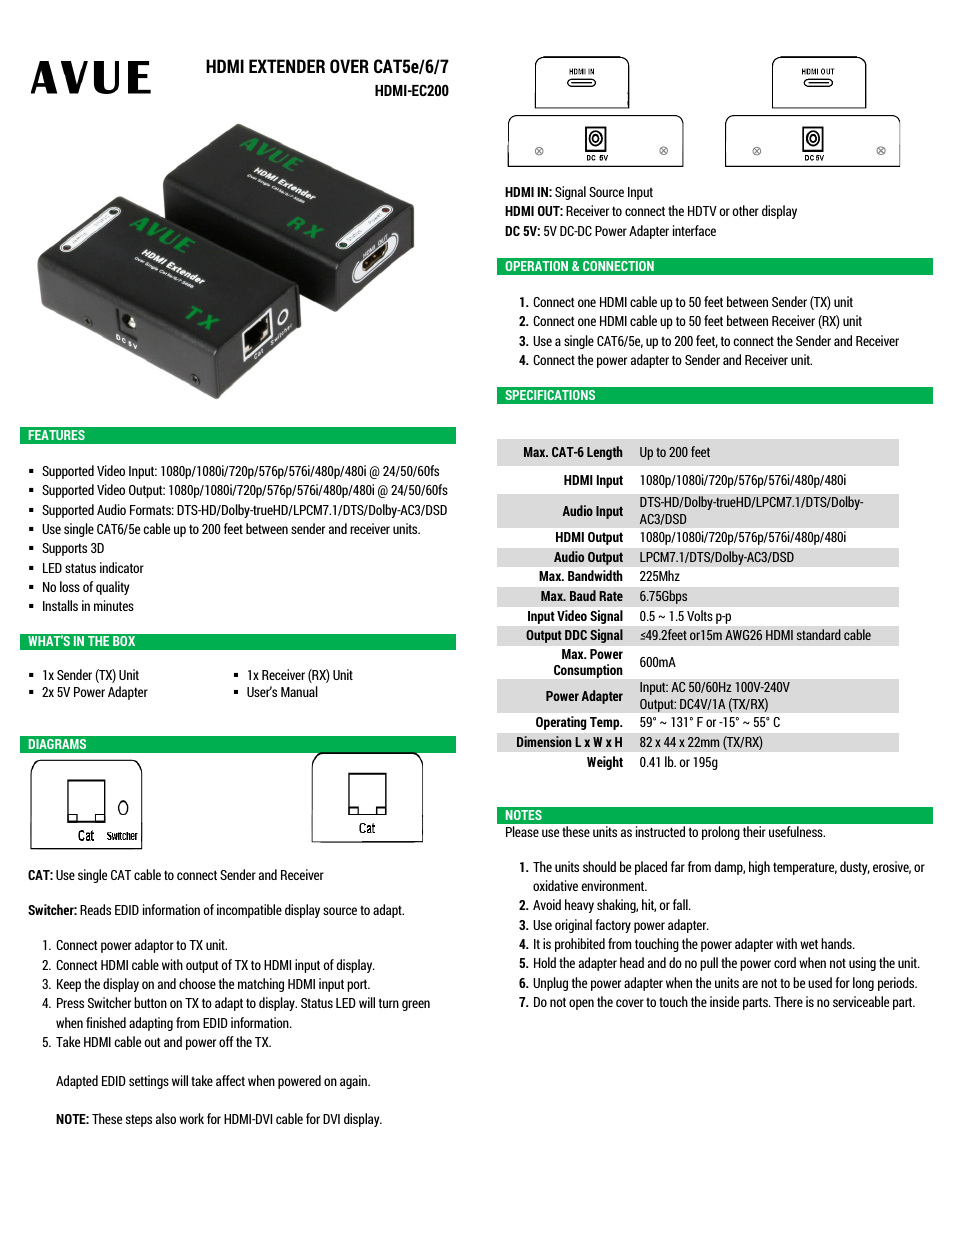 HDMI-EC200 – HDMI Extender Over CAT5e/6/7